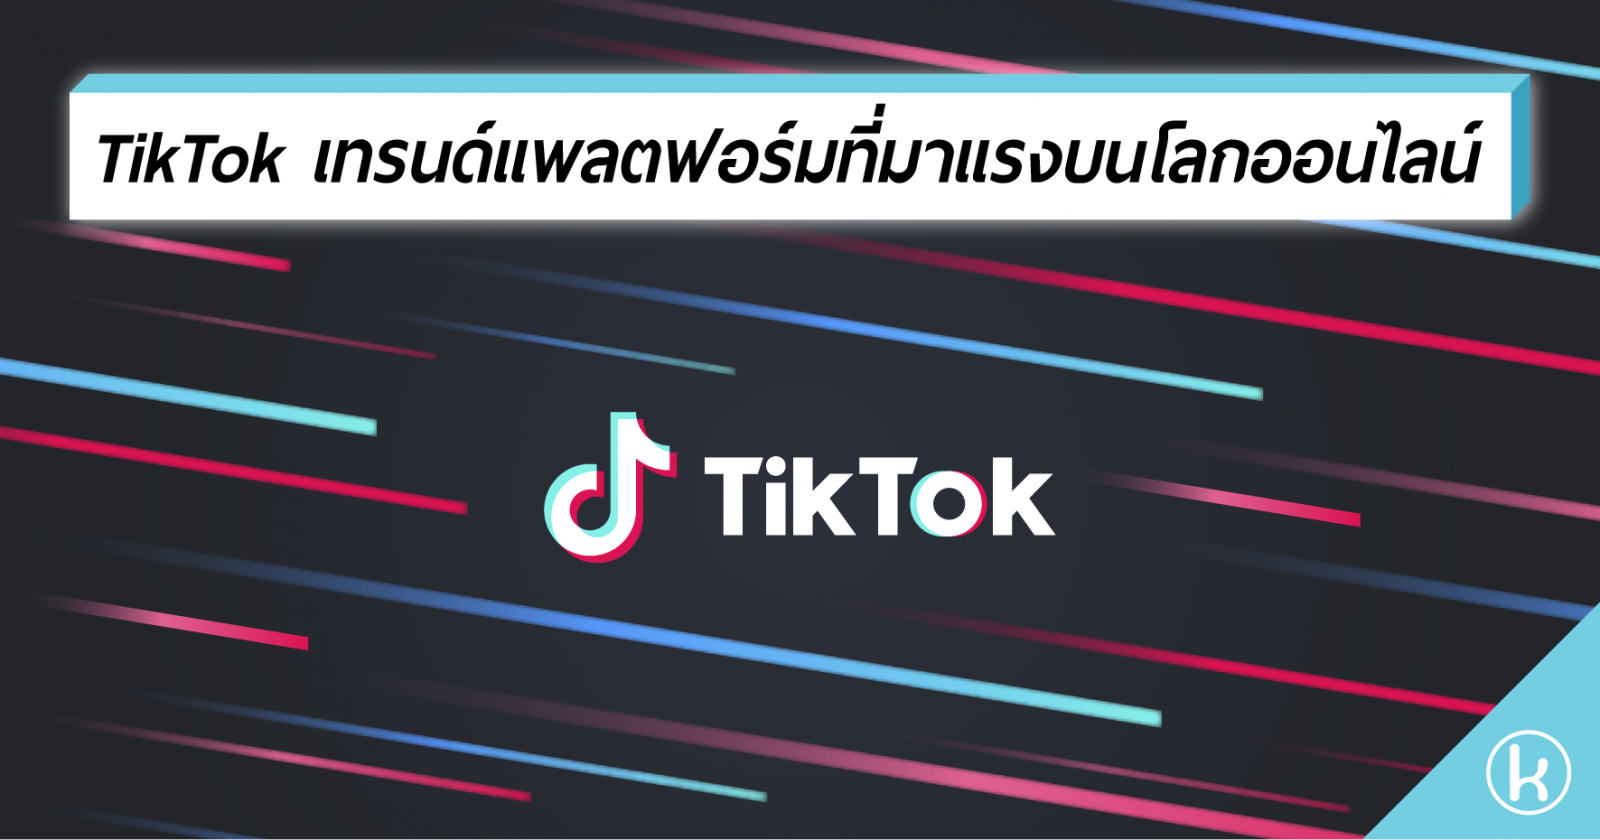 TikTok เทรนด์แพลตฟอร์มที่มาแรงบนโลกออนไลน์